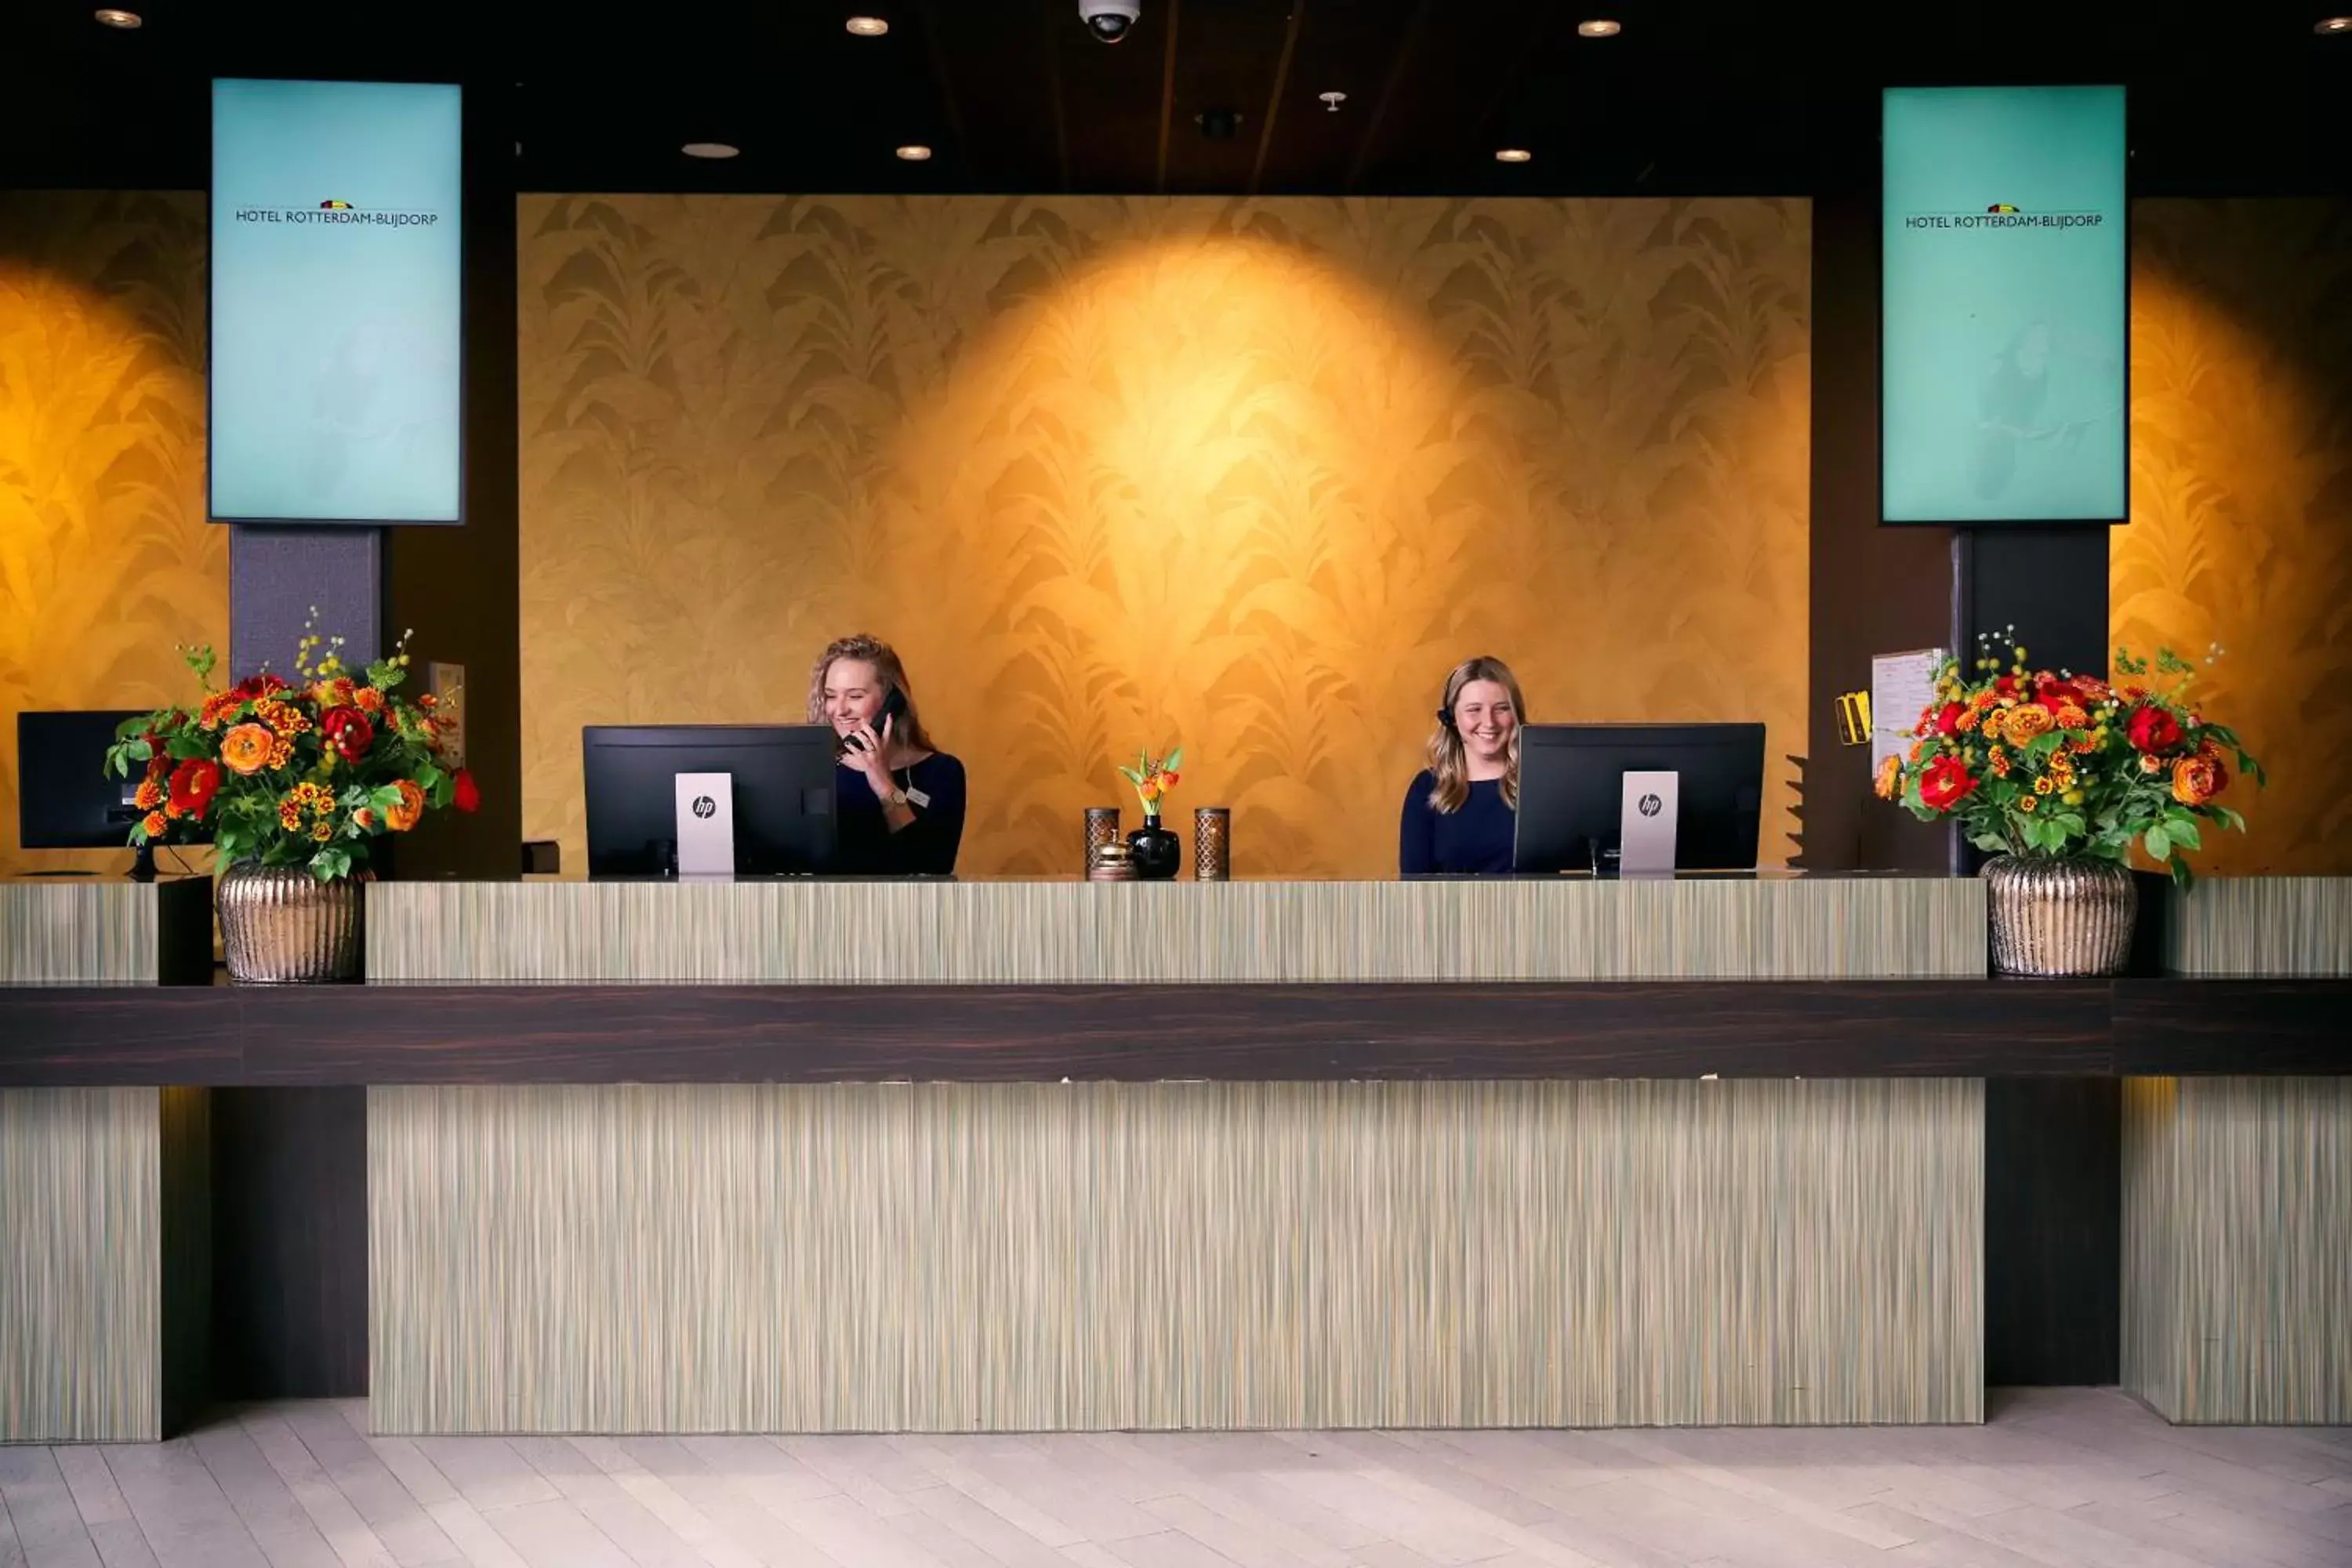 Lobby or reception in Van der Valk Hotel Rotterdam - Blijdorp